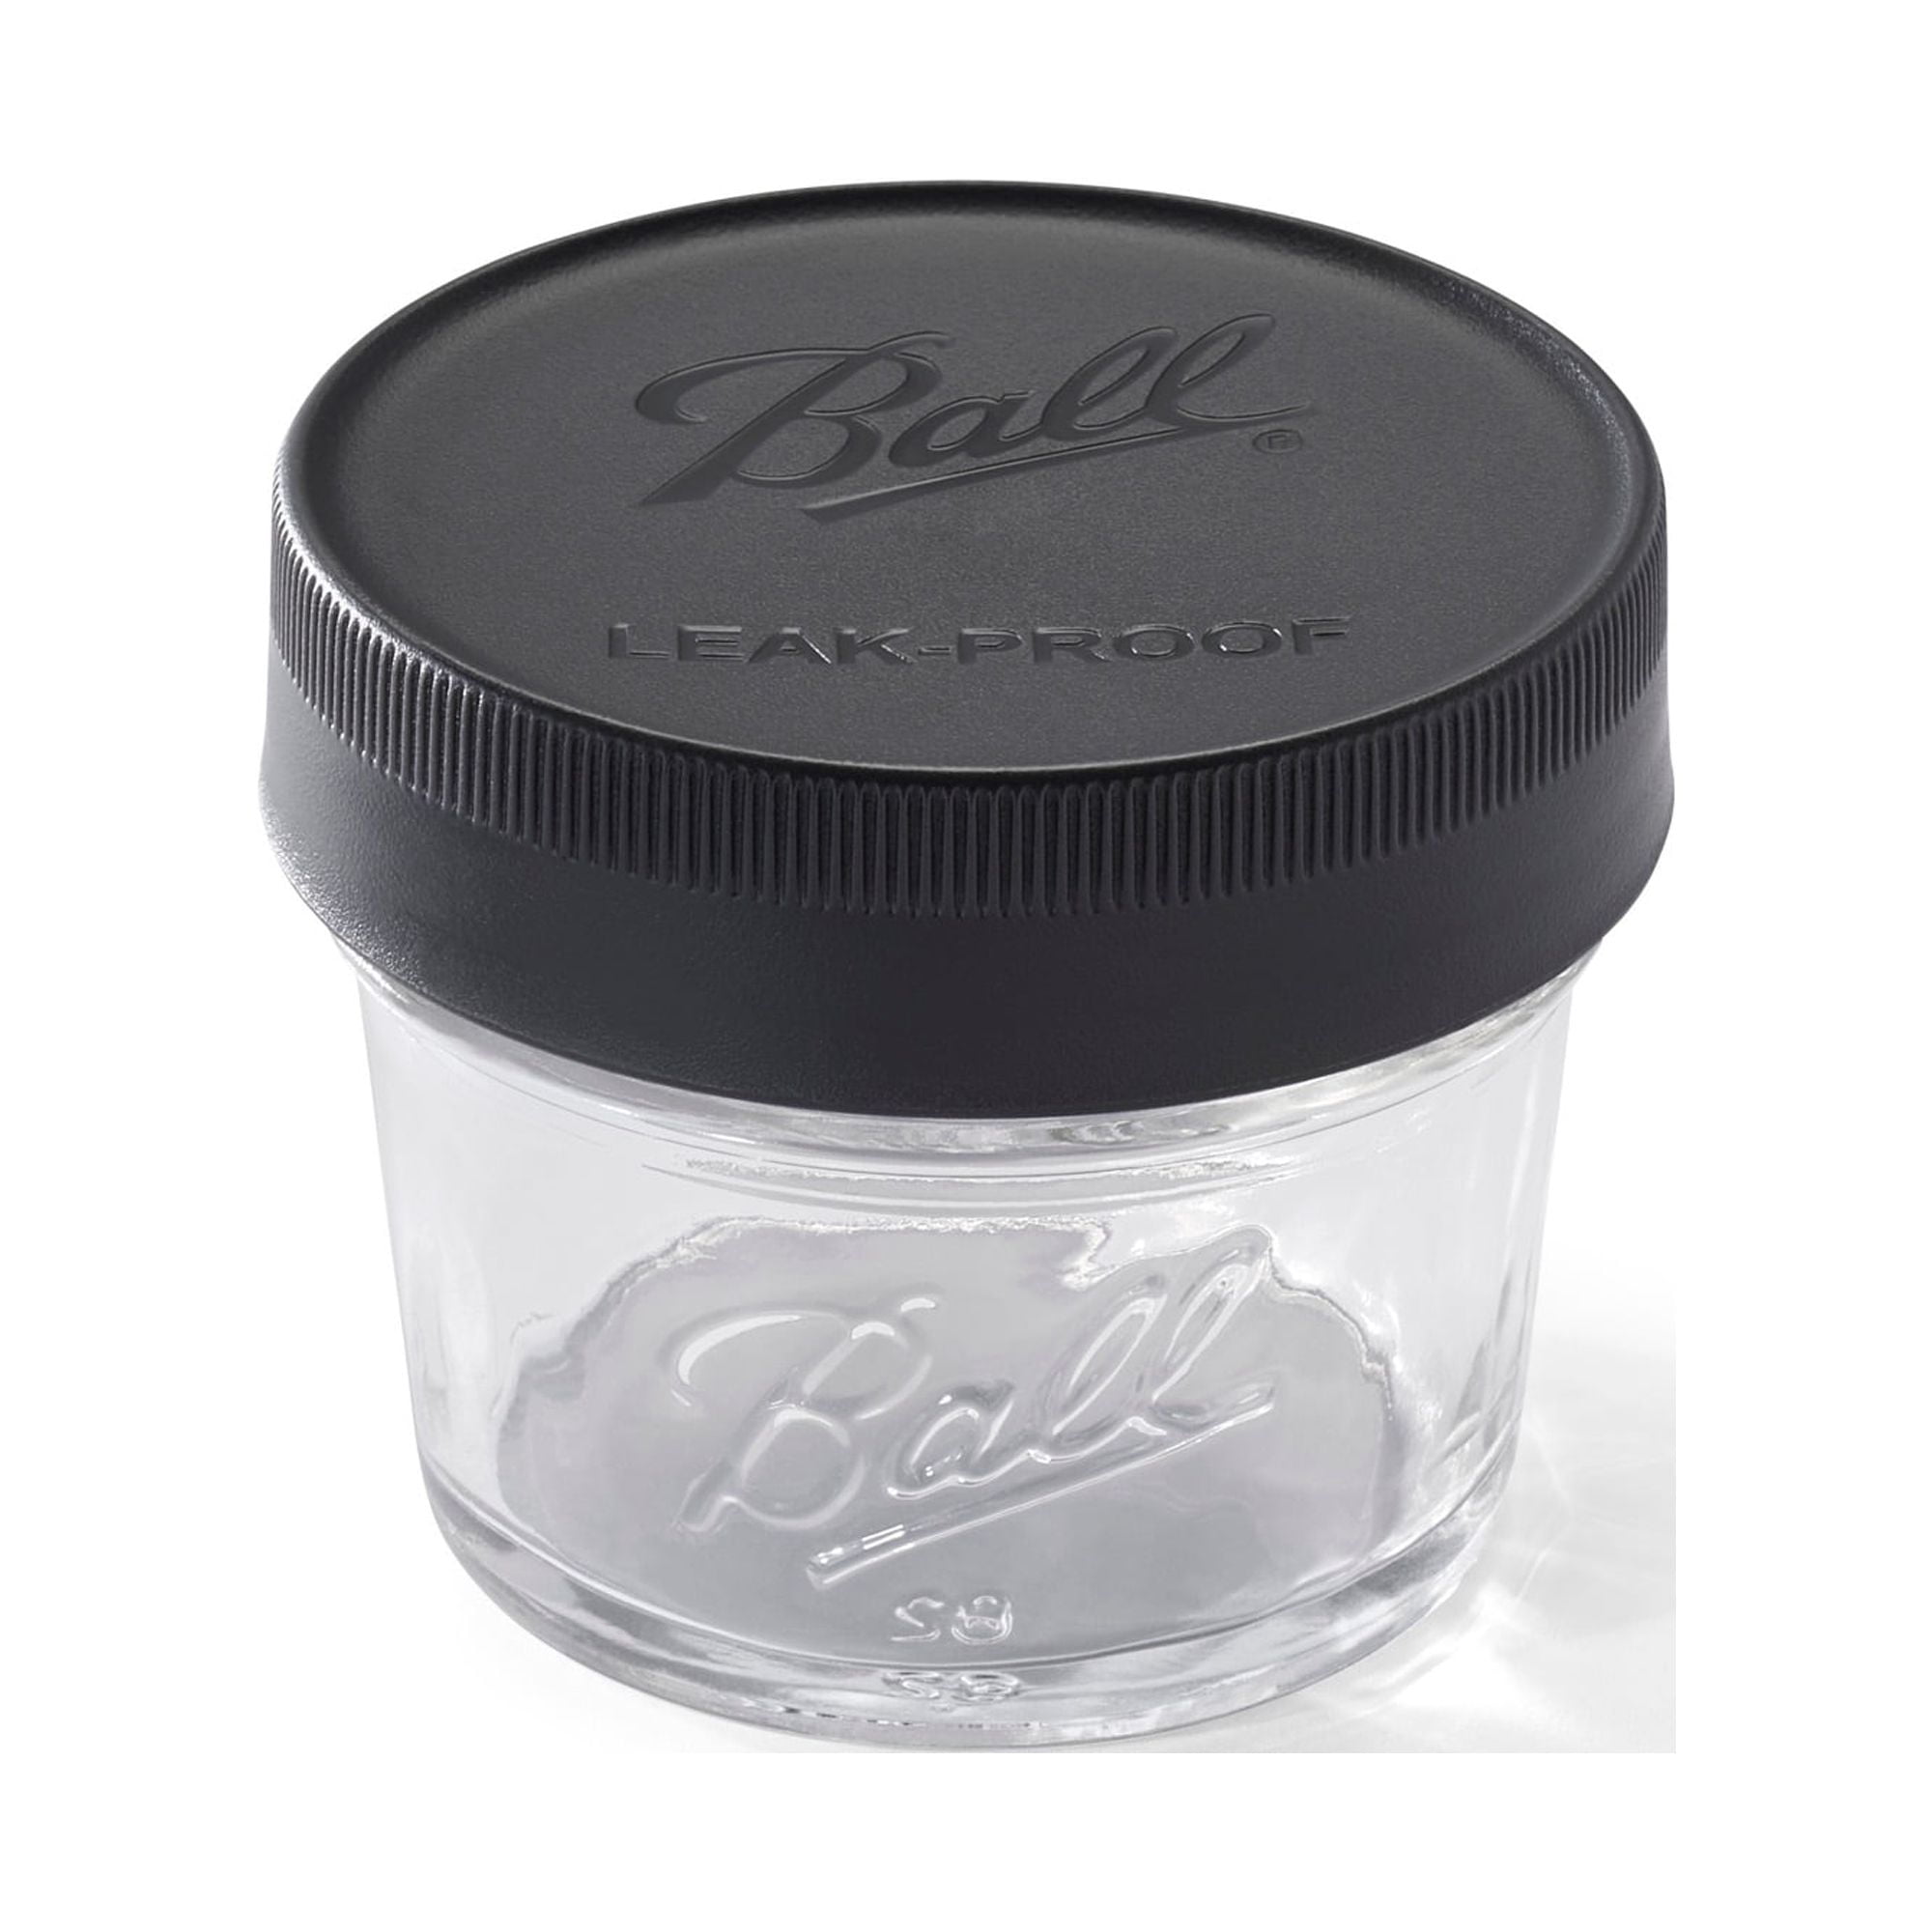 Ball 4 oz Clear Glass Mini Storage Mason Jar - 6793B01